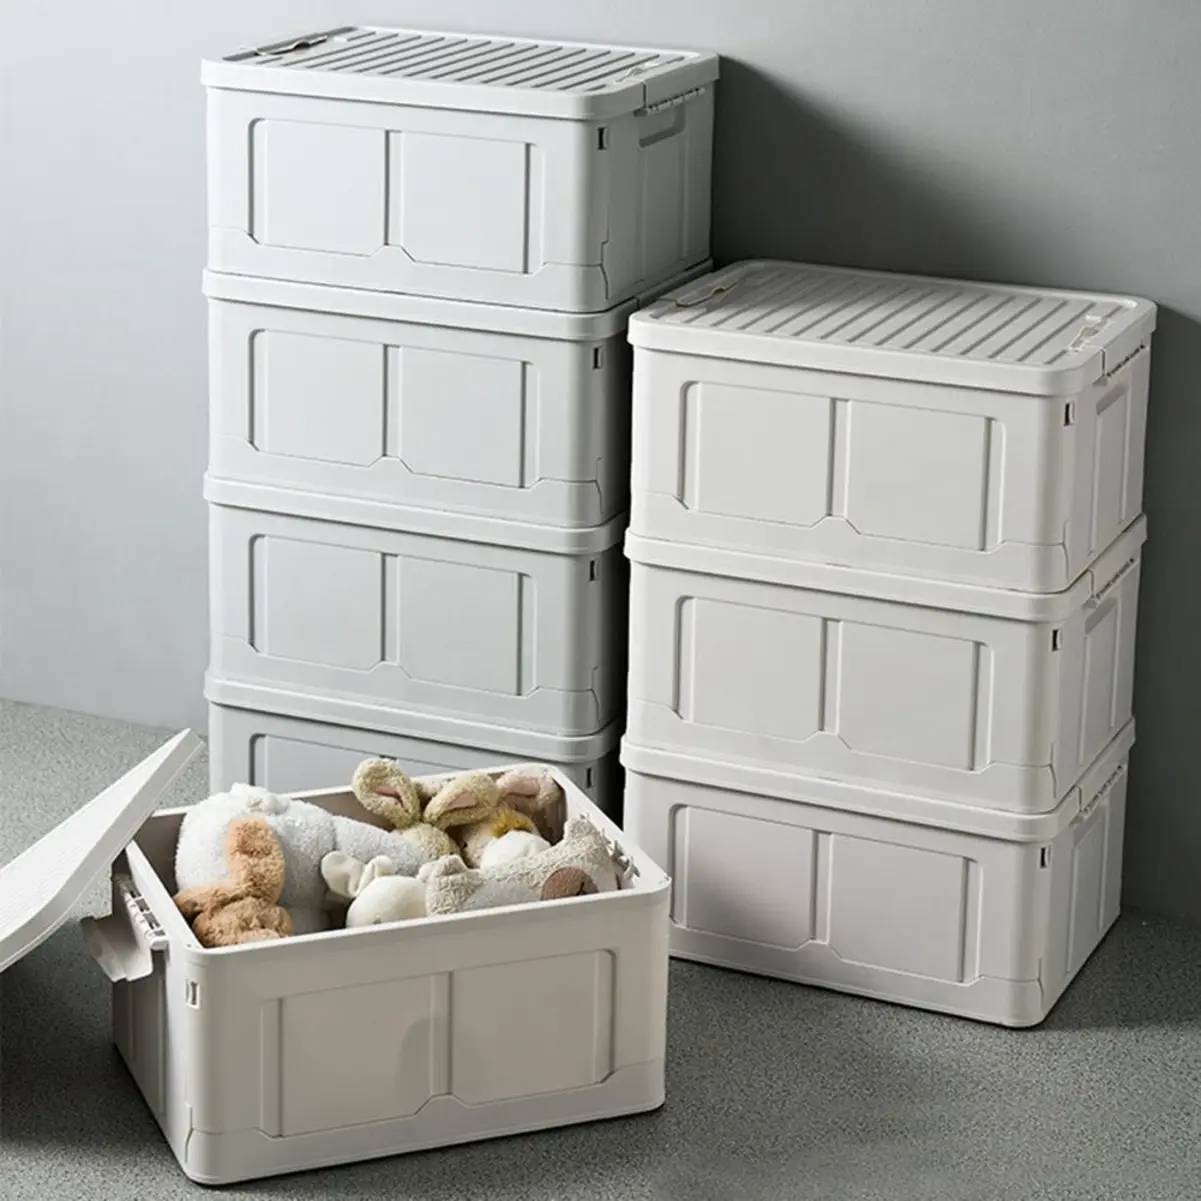 trois boites de rangement en plastique blanc pour organiser placard